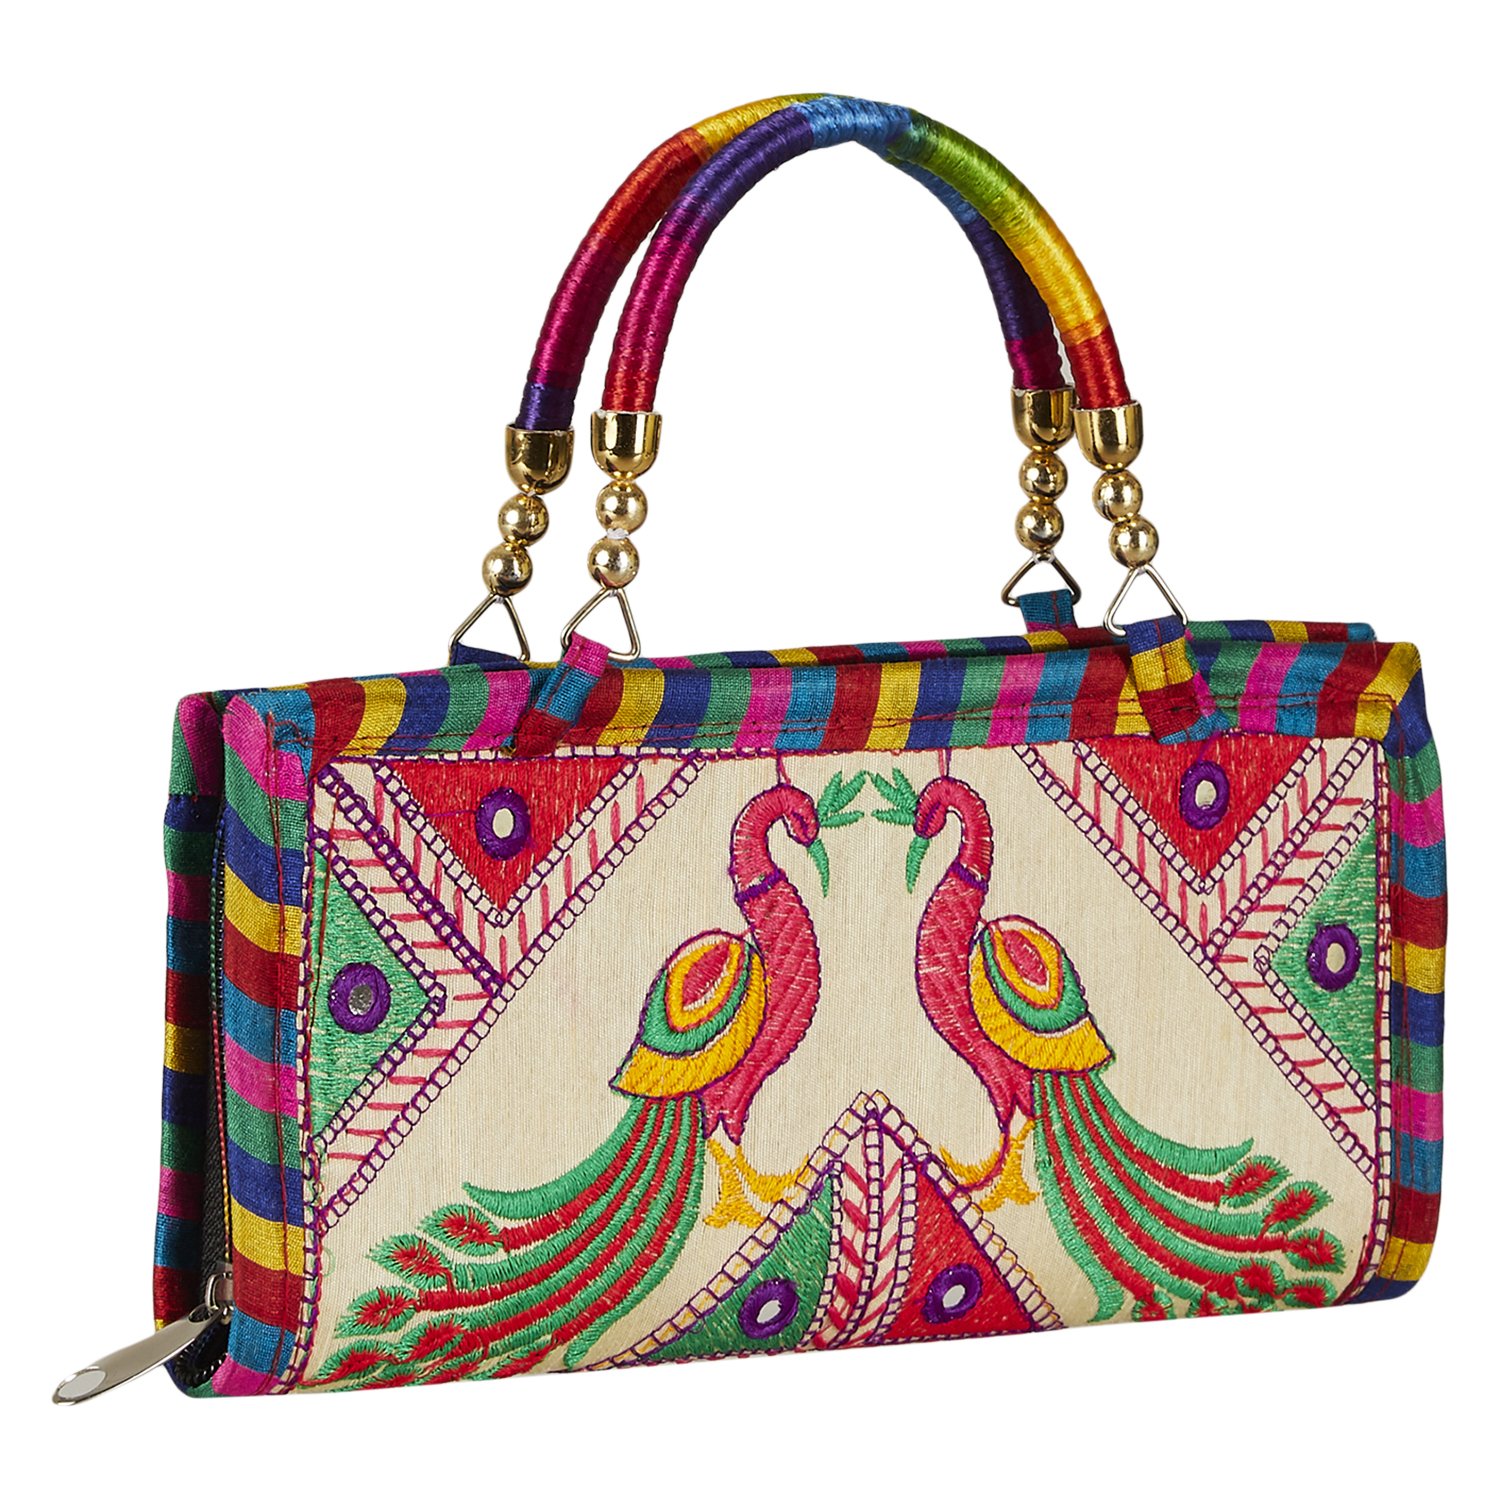 Sling Bag के ये हैं 5 बेहतरीन और ब्रांडेड मॉडल, इन पर पाएं 70% तक की छूट -  handbags with sling in stylish model at lowest price - Navbharat Times